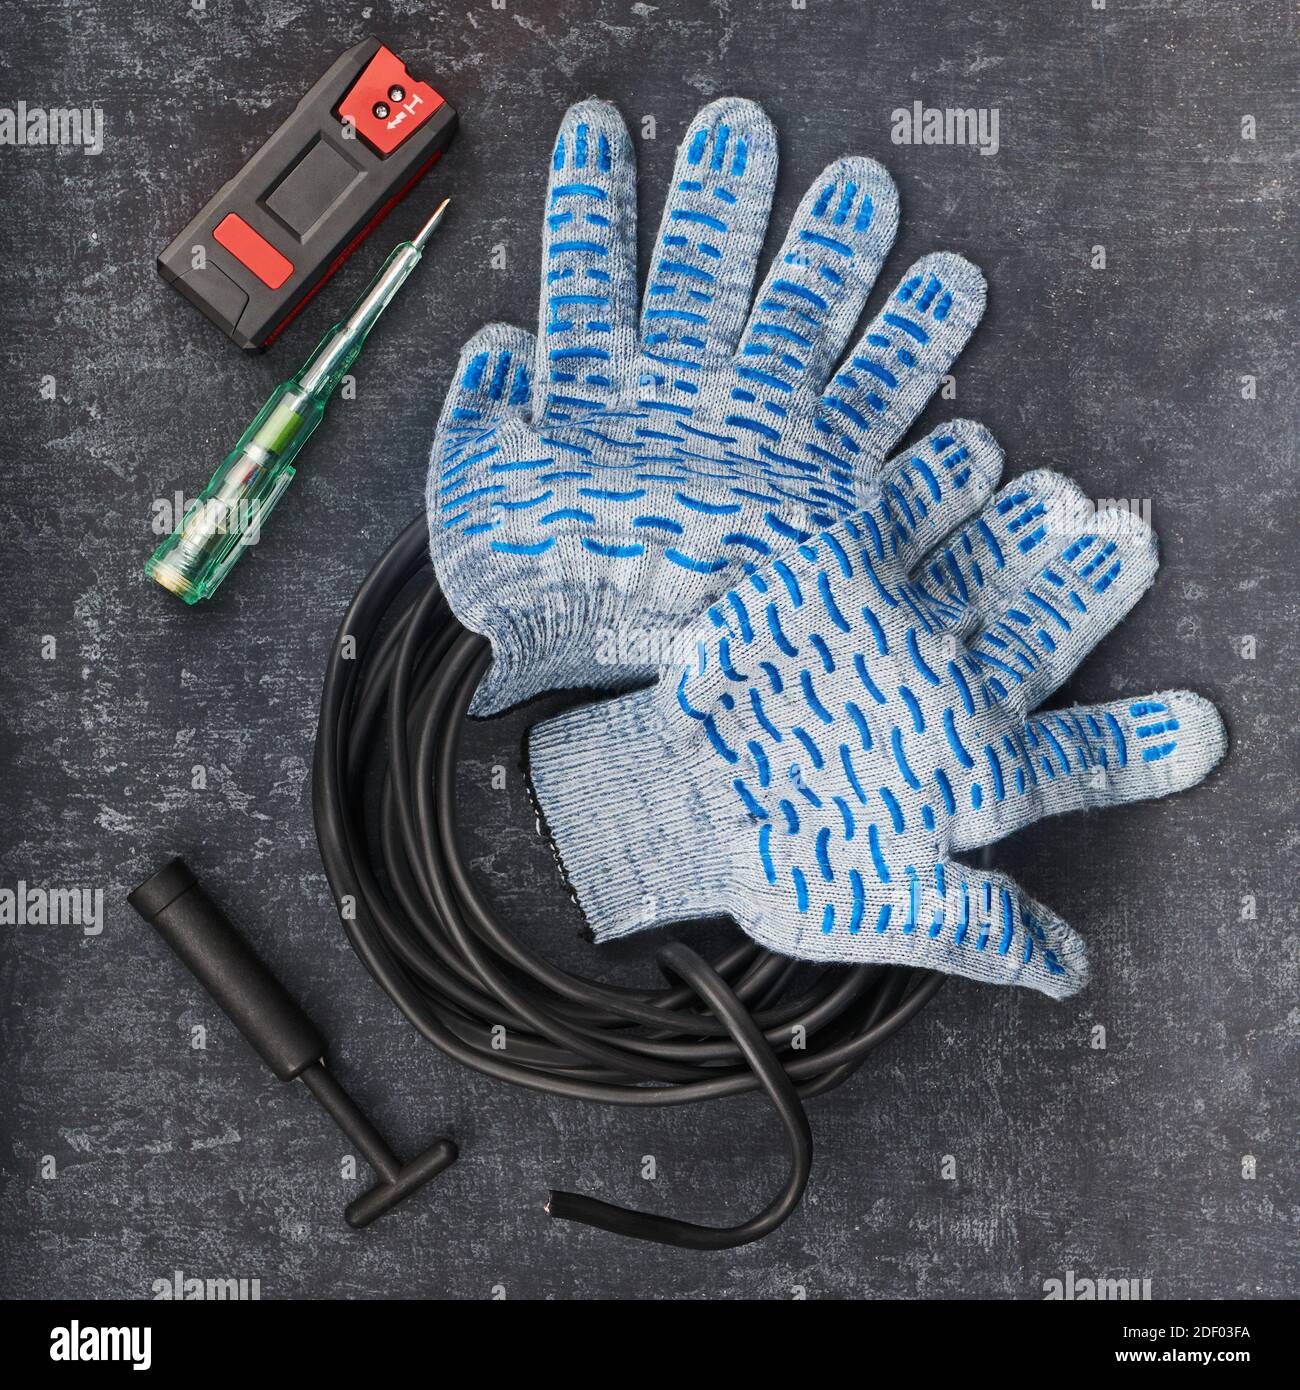 Manuelles Werkzeug und Zubehör für elektrische Installationen auf grauem Hintergrund, Draufsicht Stockfoto